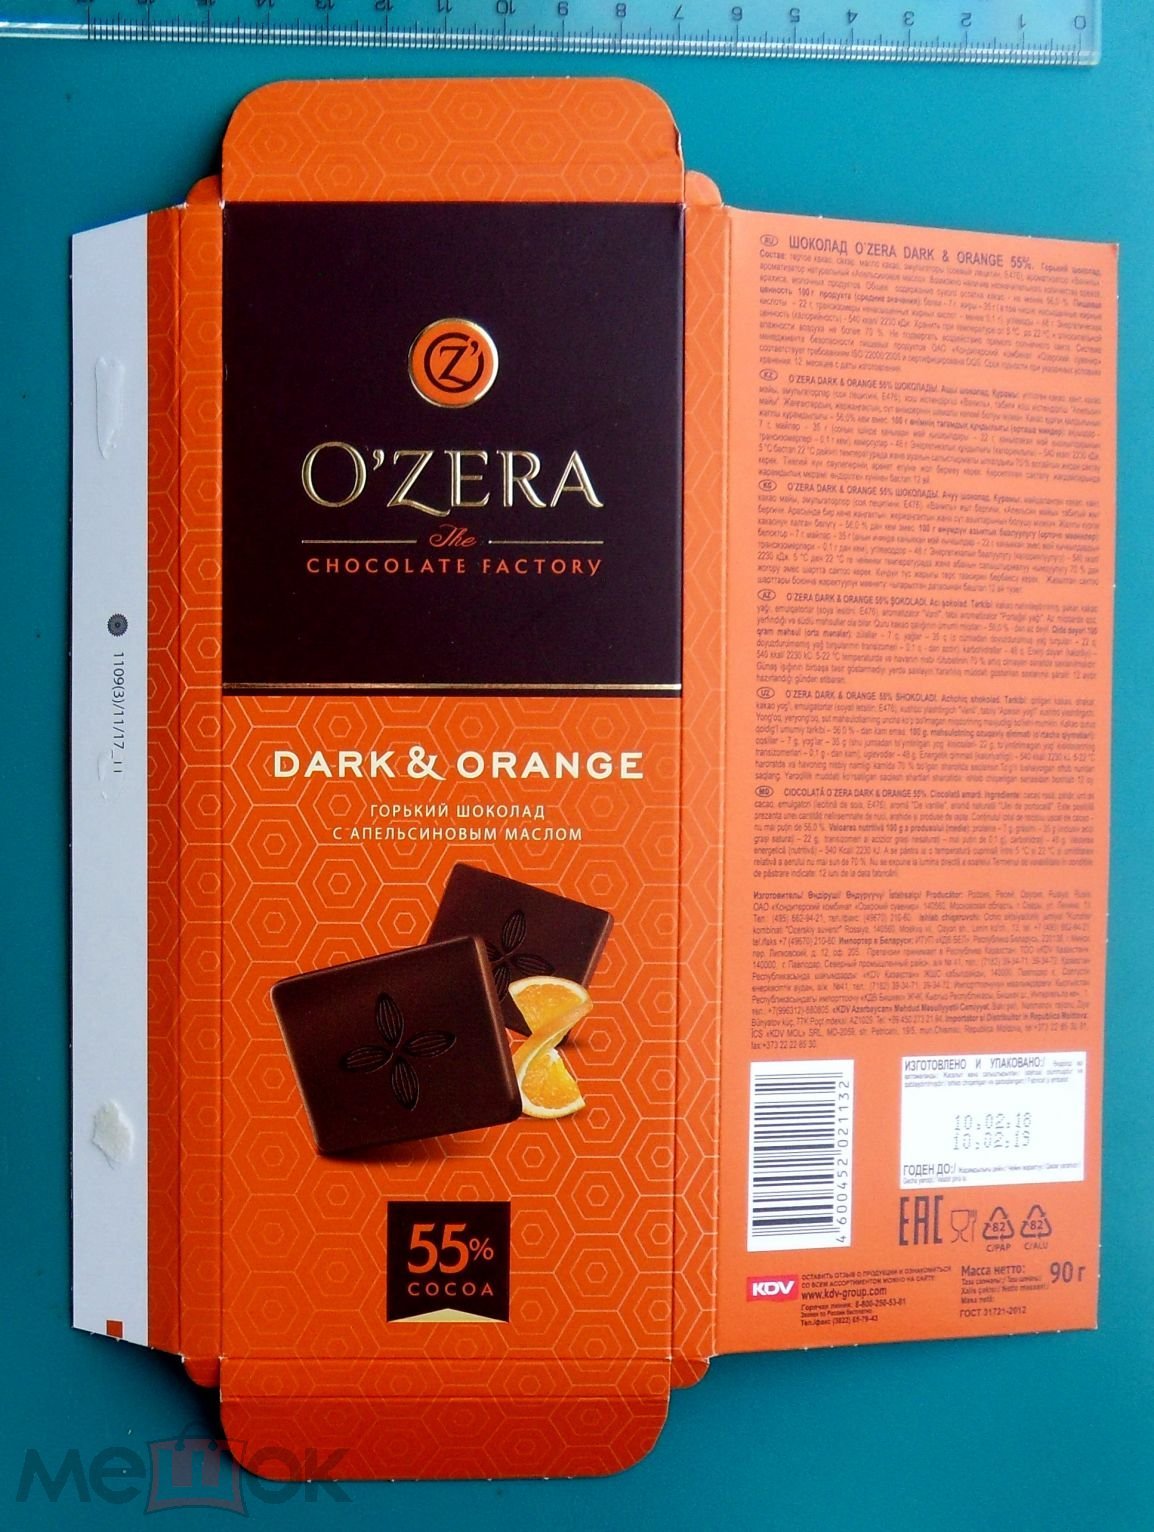 Шоколад озеры. Шоколад Ozera шоколад 90. Конфеты o'Zera Горький шоколад. Озерский сувенир шоколад. Озерский сувенир конфеты.